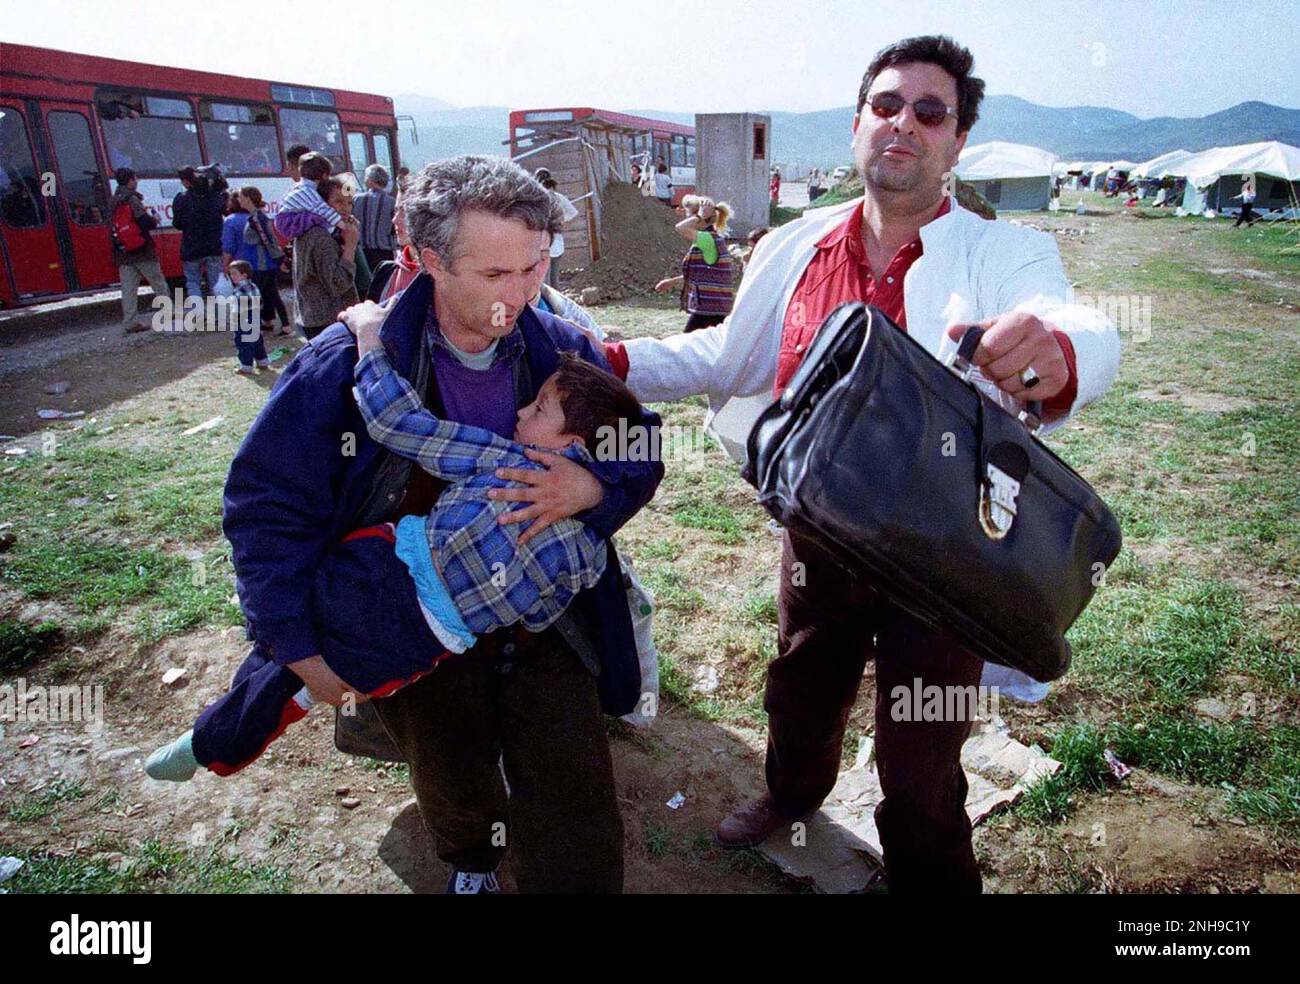 Der Mann rennt mit dem Kind, um medizinische Hilfe mit dem Arzt zu suchen. Mann und Kind waren wegen ethnischer Säuberungen aus dem Kosovo geflohen und kamen mit dem Bus vom Grenzübergang nach Nordmazedonien. Flüchtlingslager Brazda in Mazedonien, April 1999. Das Lager wurde von der NATO geleitet, aber an das UNHCR übergeben. Mazedonien. Abbildung garyrobertsphotography.com Stockfoto